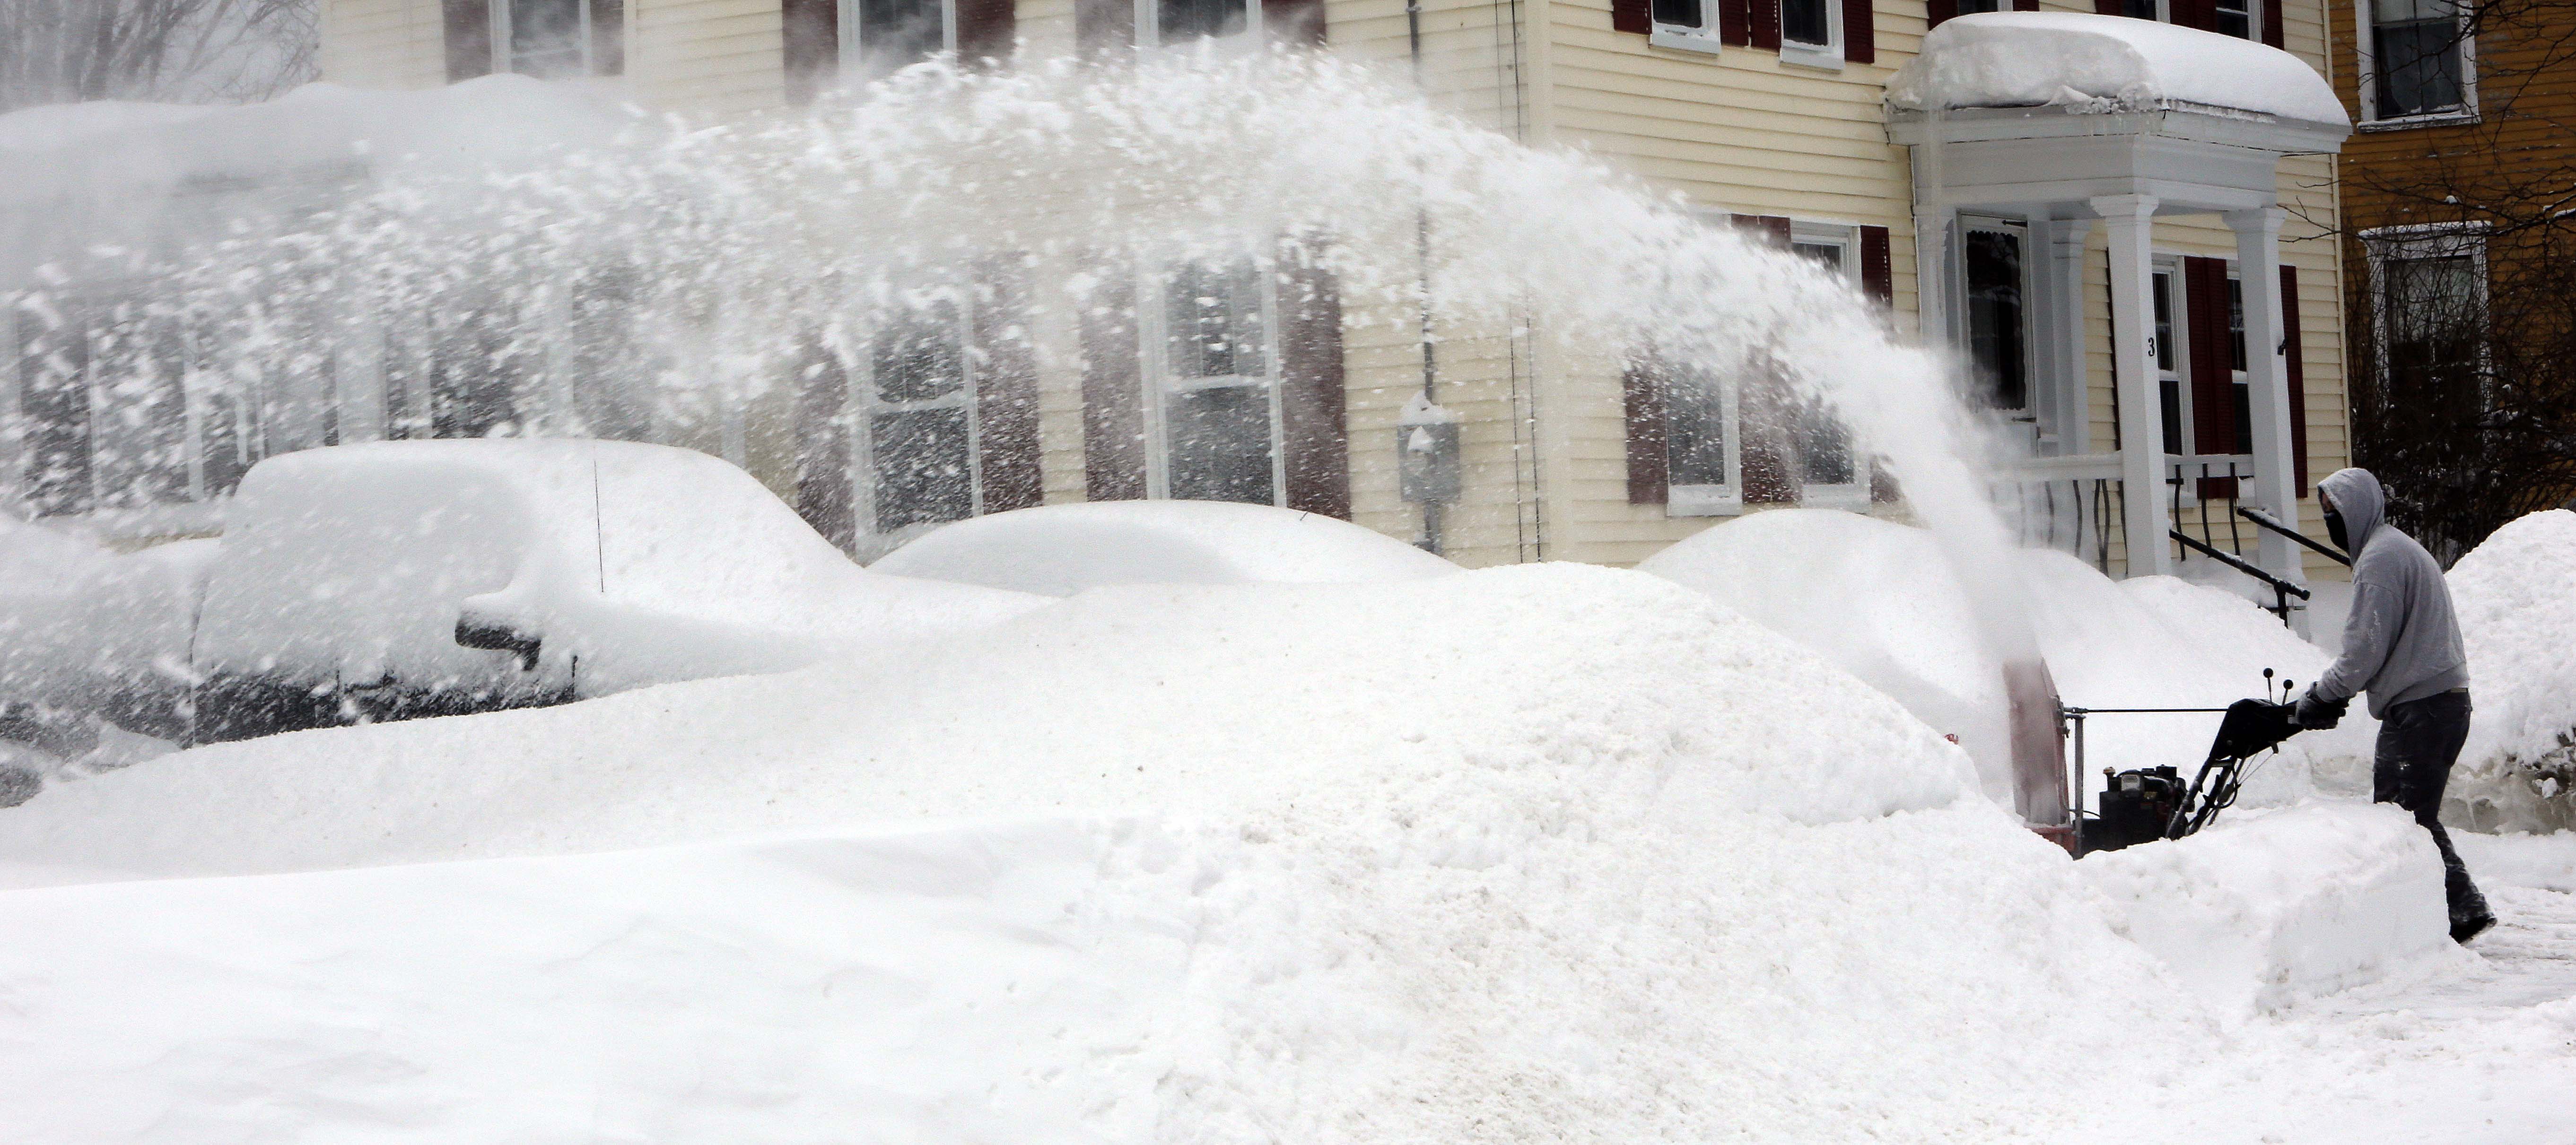 Выпал снег воскресенье. Хэмпшир зима. 53 См снега. Нью Гэмпшир зима. Фото люди лопатами расчищают каток.